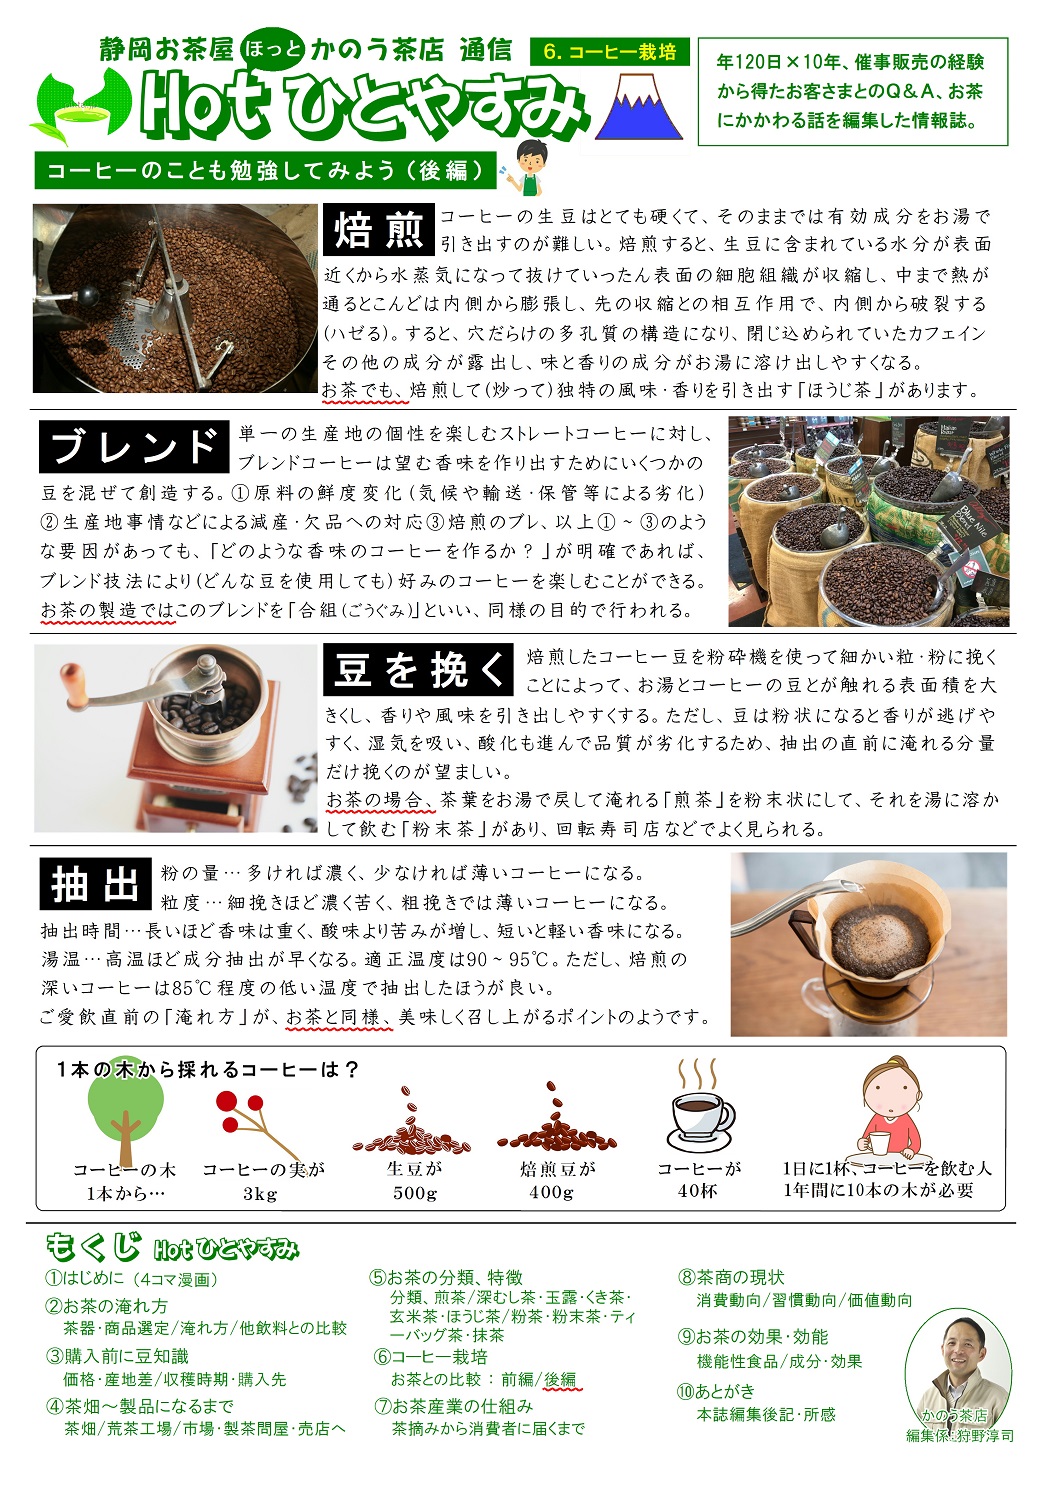 (6)コーヒー栽培(後編)